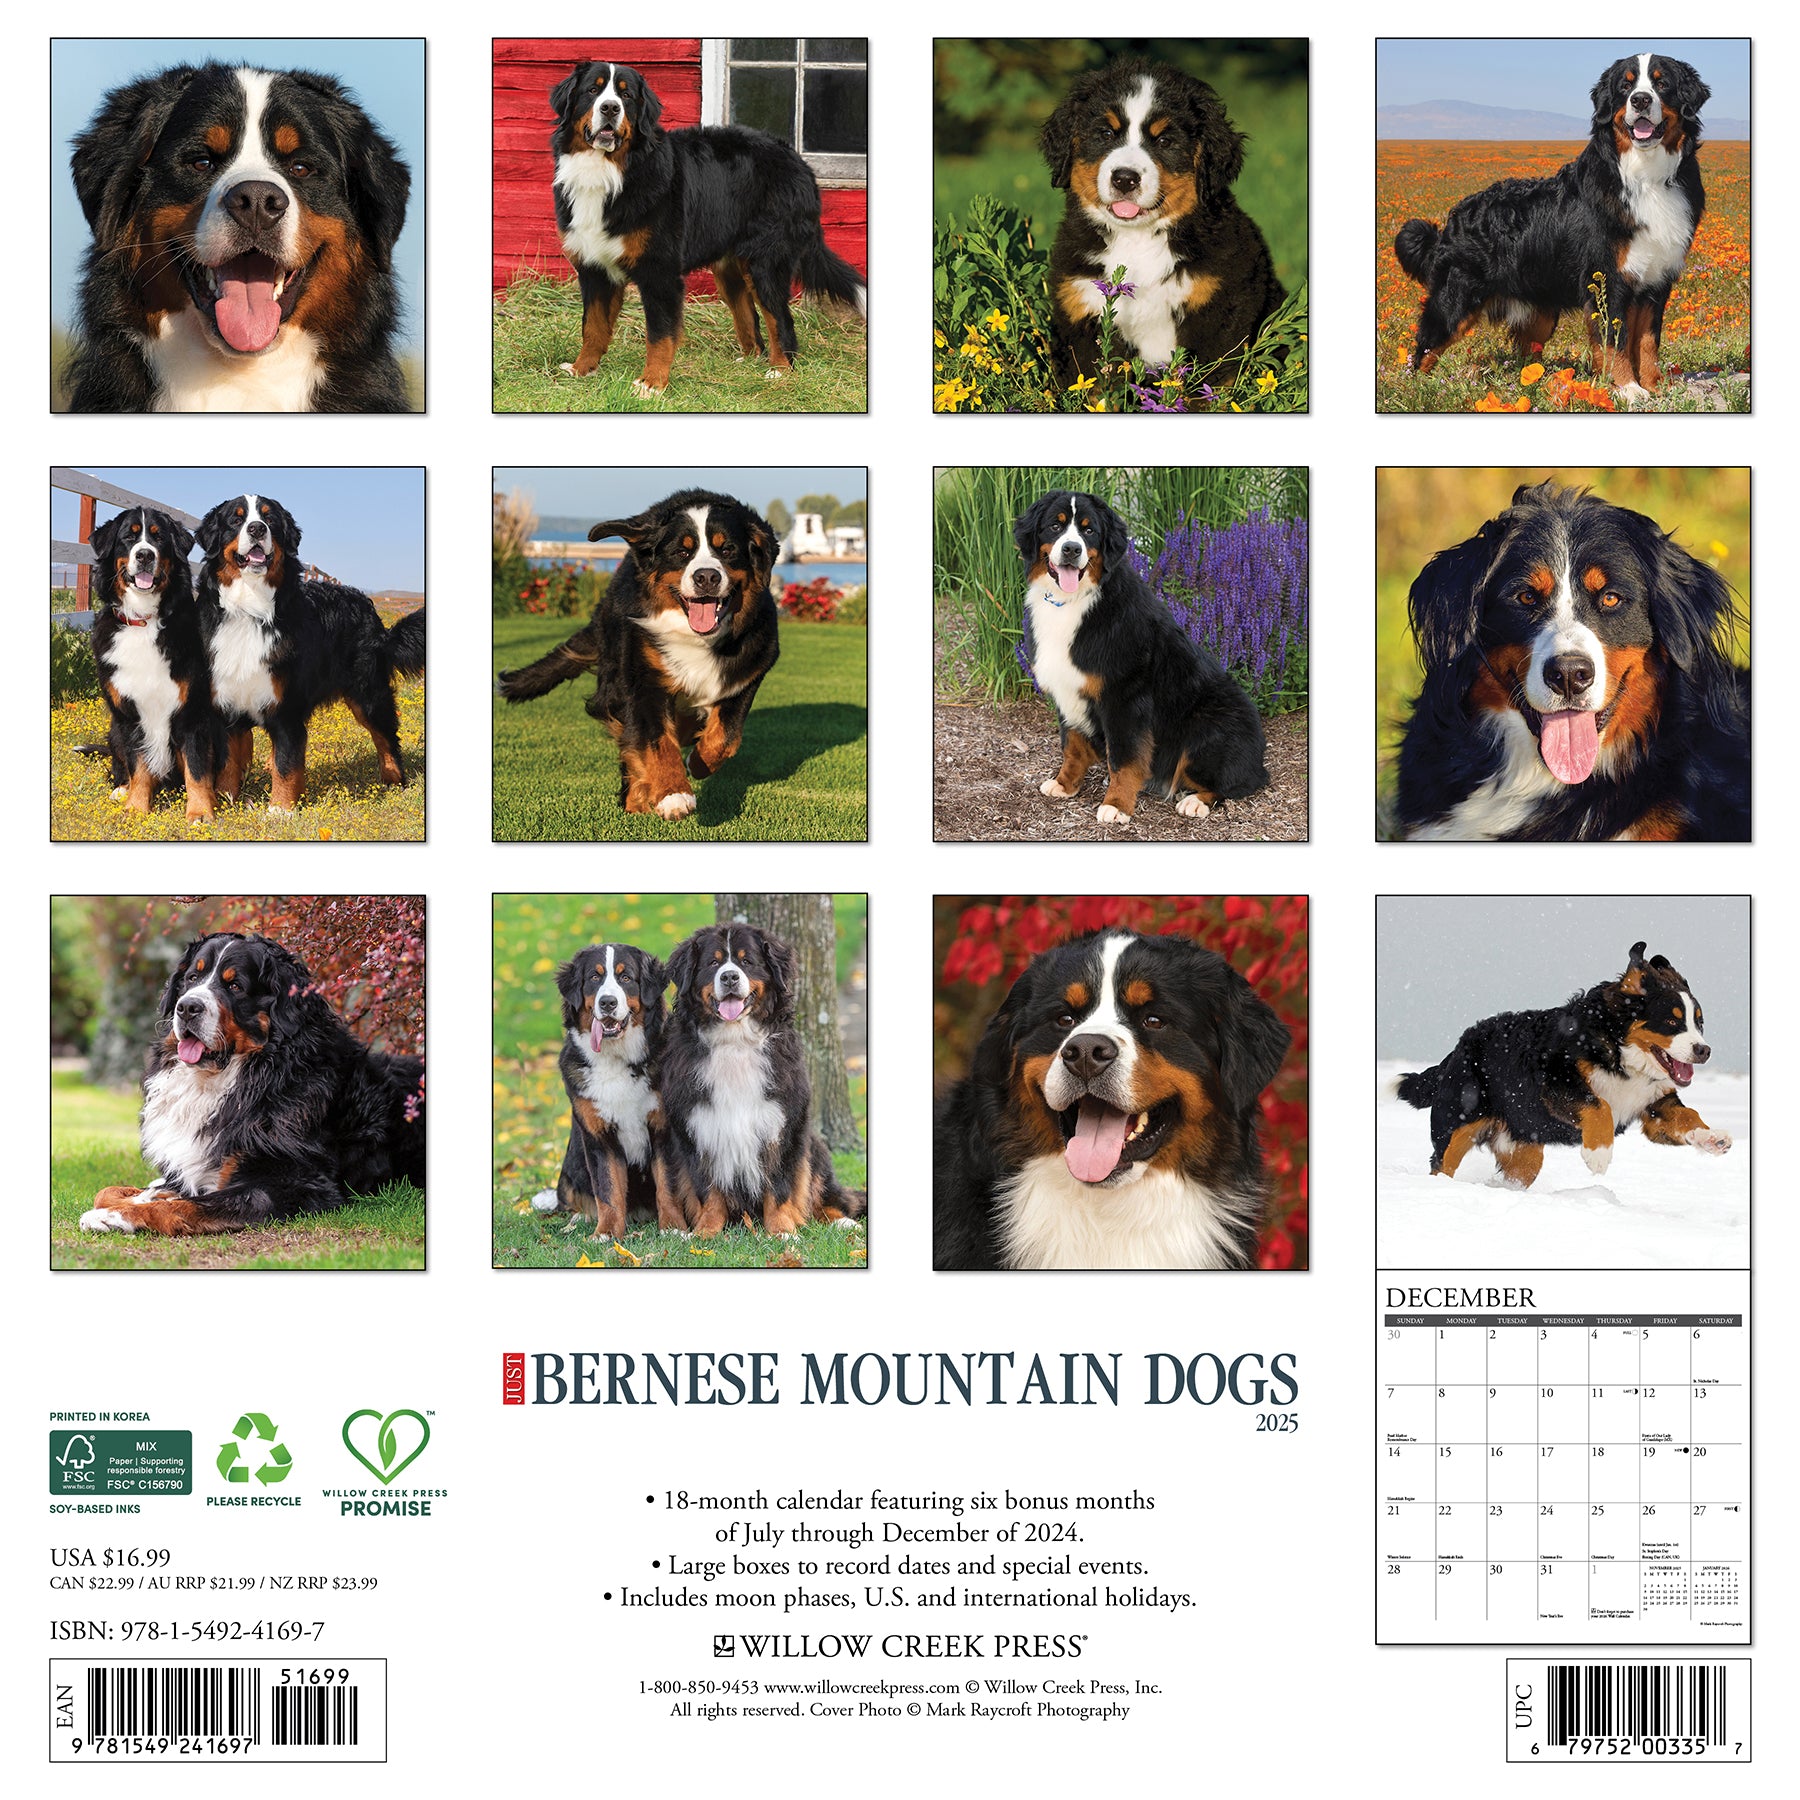 Just Bernese Mountain Dogs 2025 Calendar